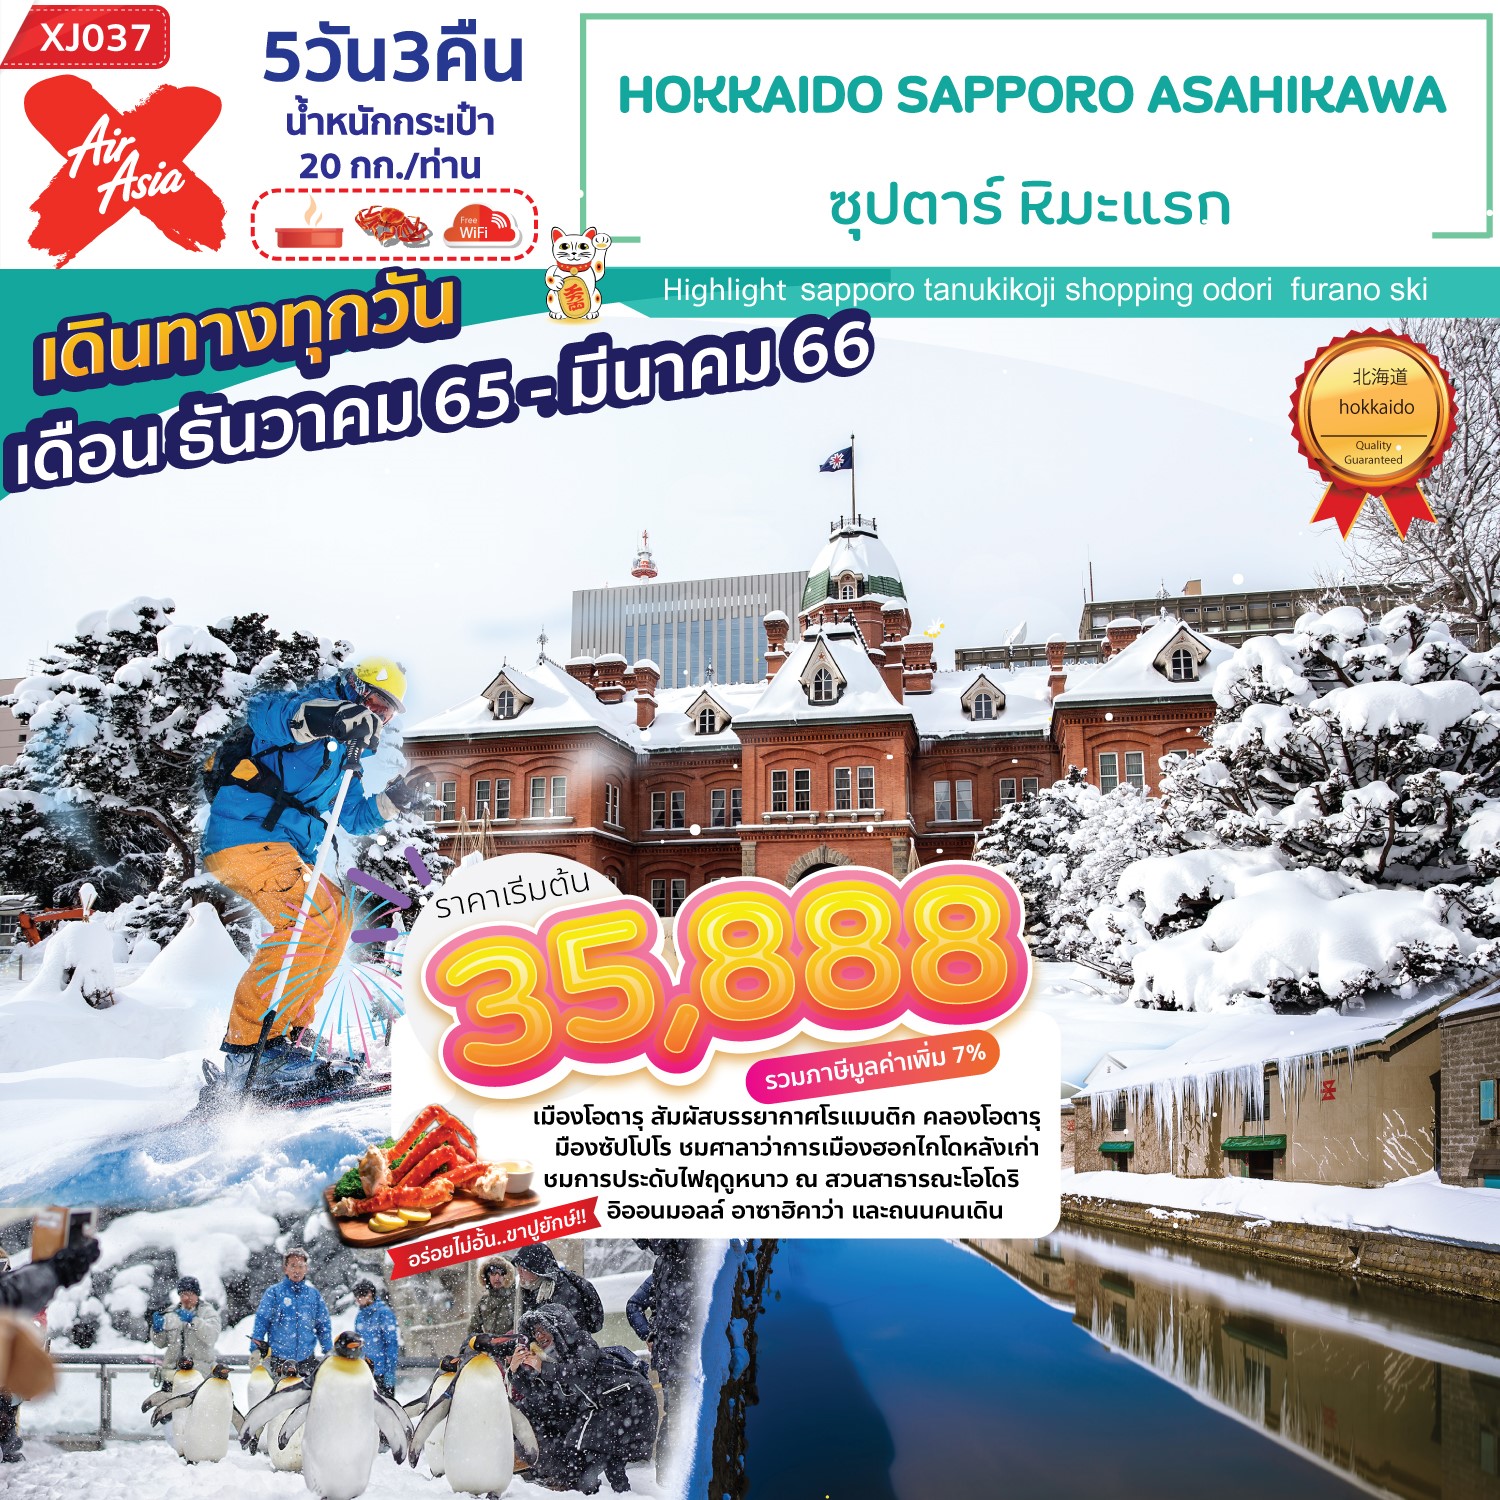 XJ037 - HOKKAIDO SAPPORO ASAHIKAWA 5D3N ซุปตาร์ หิมะแรก